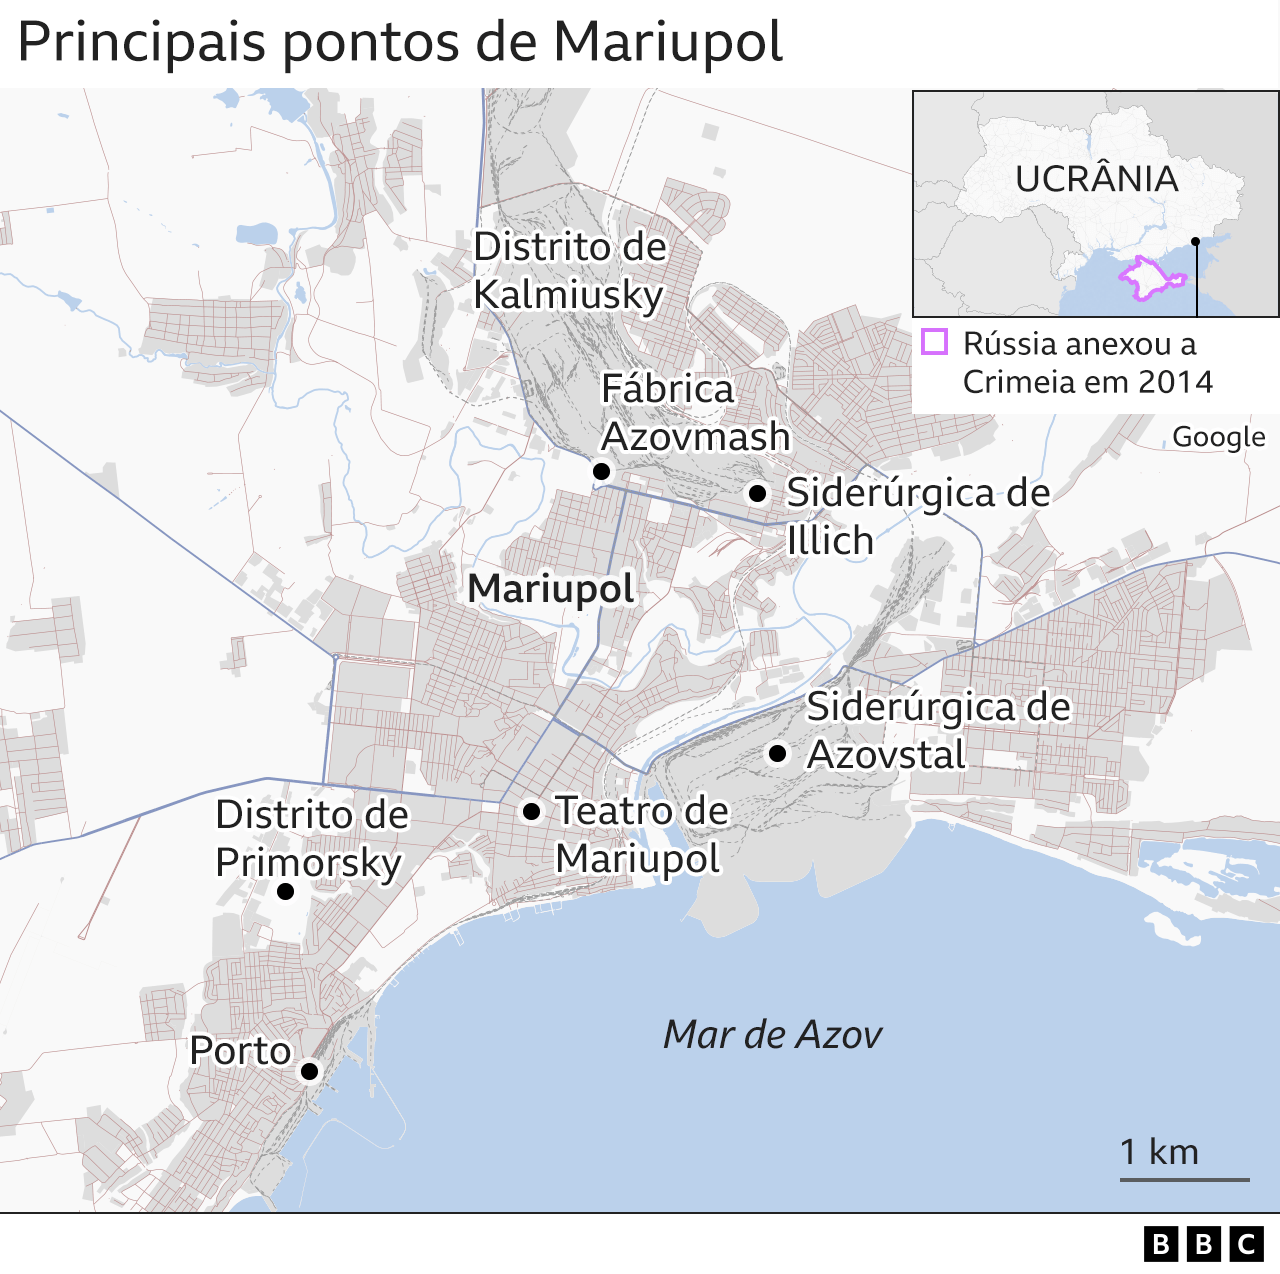 mapa mostra principais lugares da cidade de mariupol, como porto e siderúrgicas